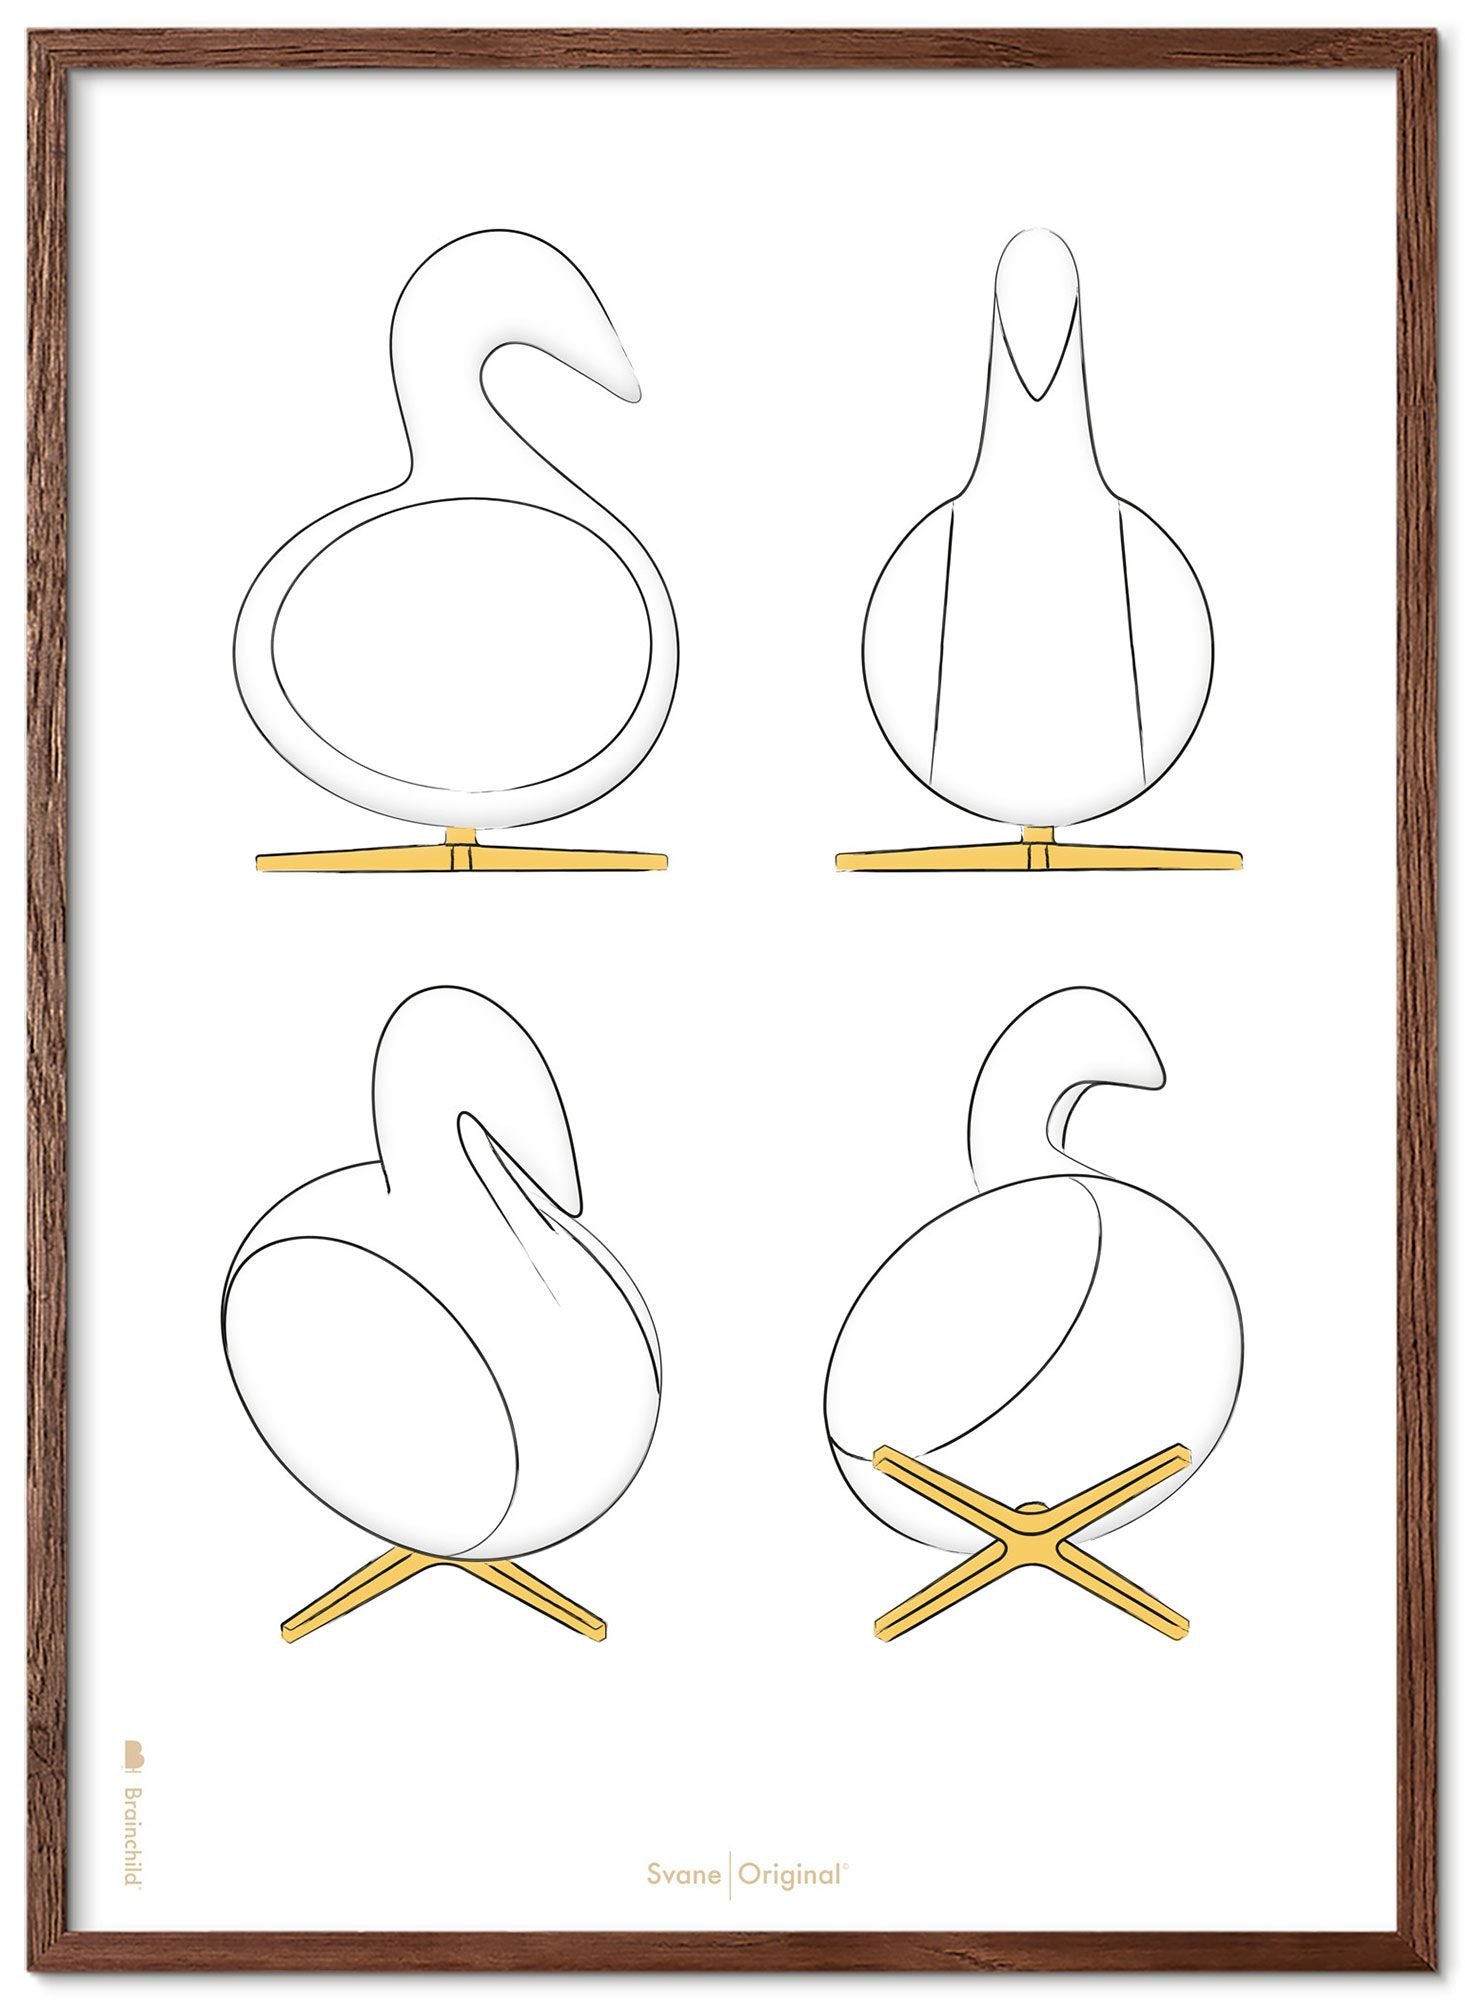 Marco de carteles de bocetos de diseño de Swan de creación de madera oscura 30x40 cm, fondo blanco